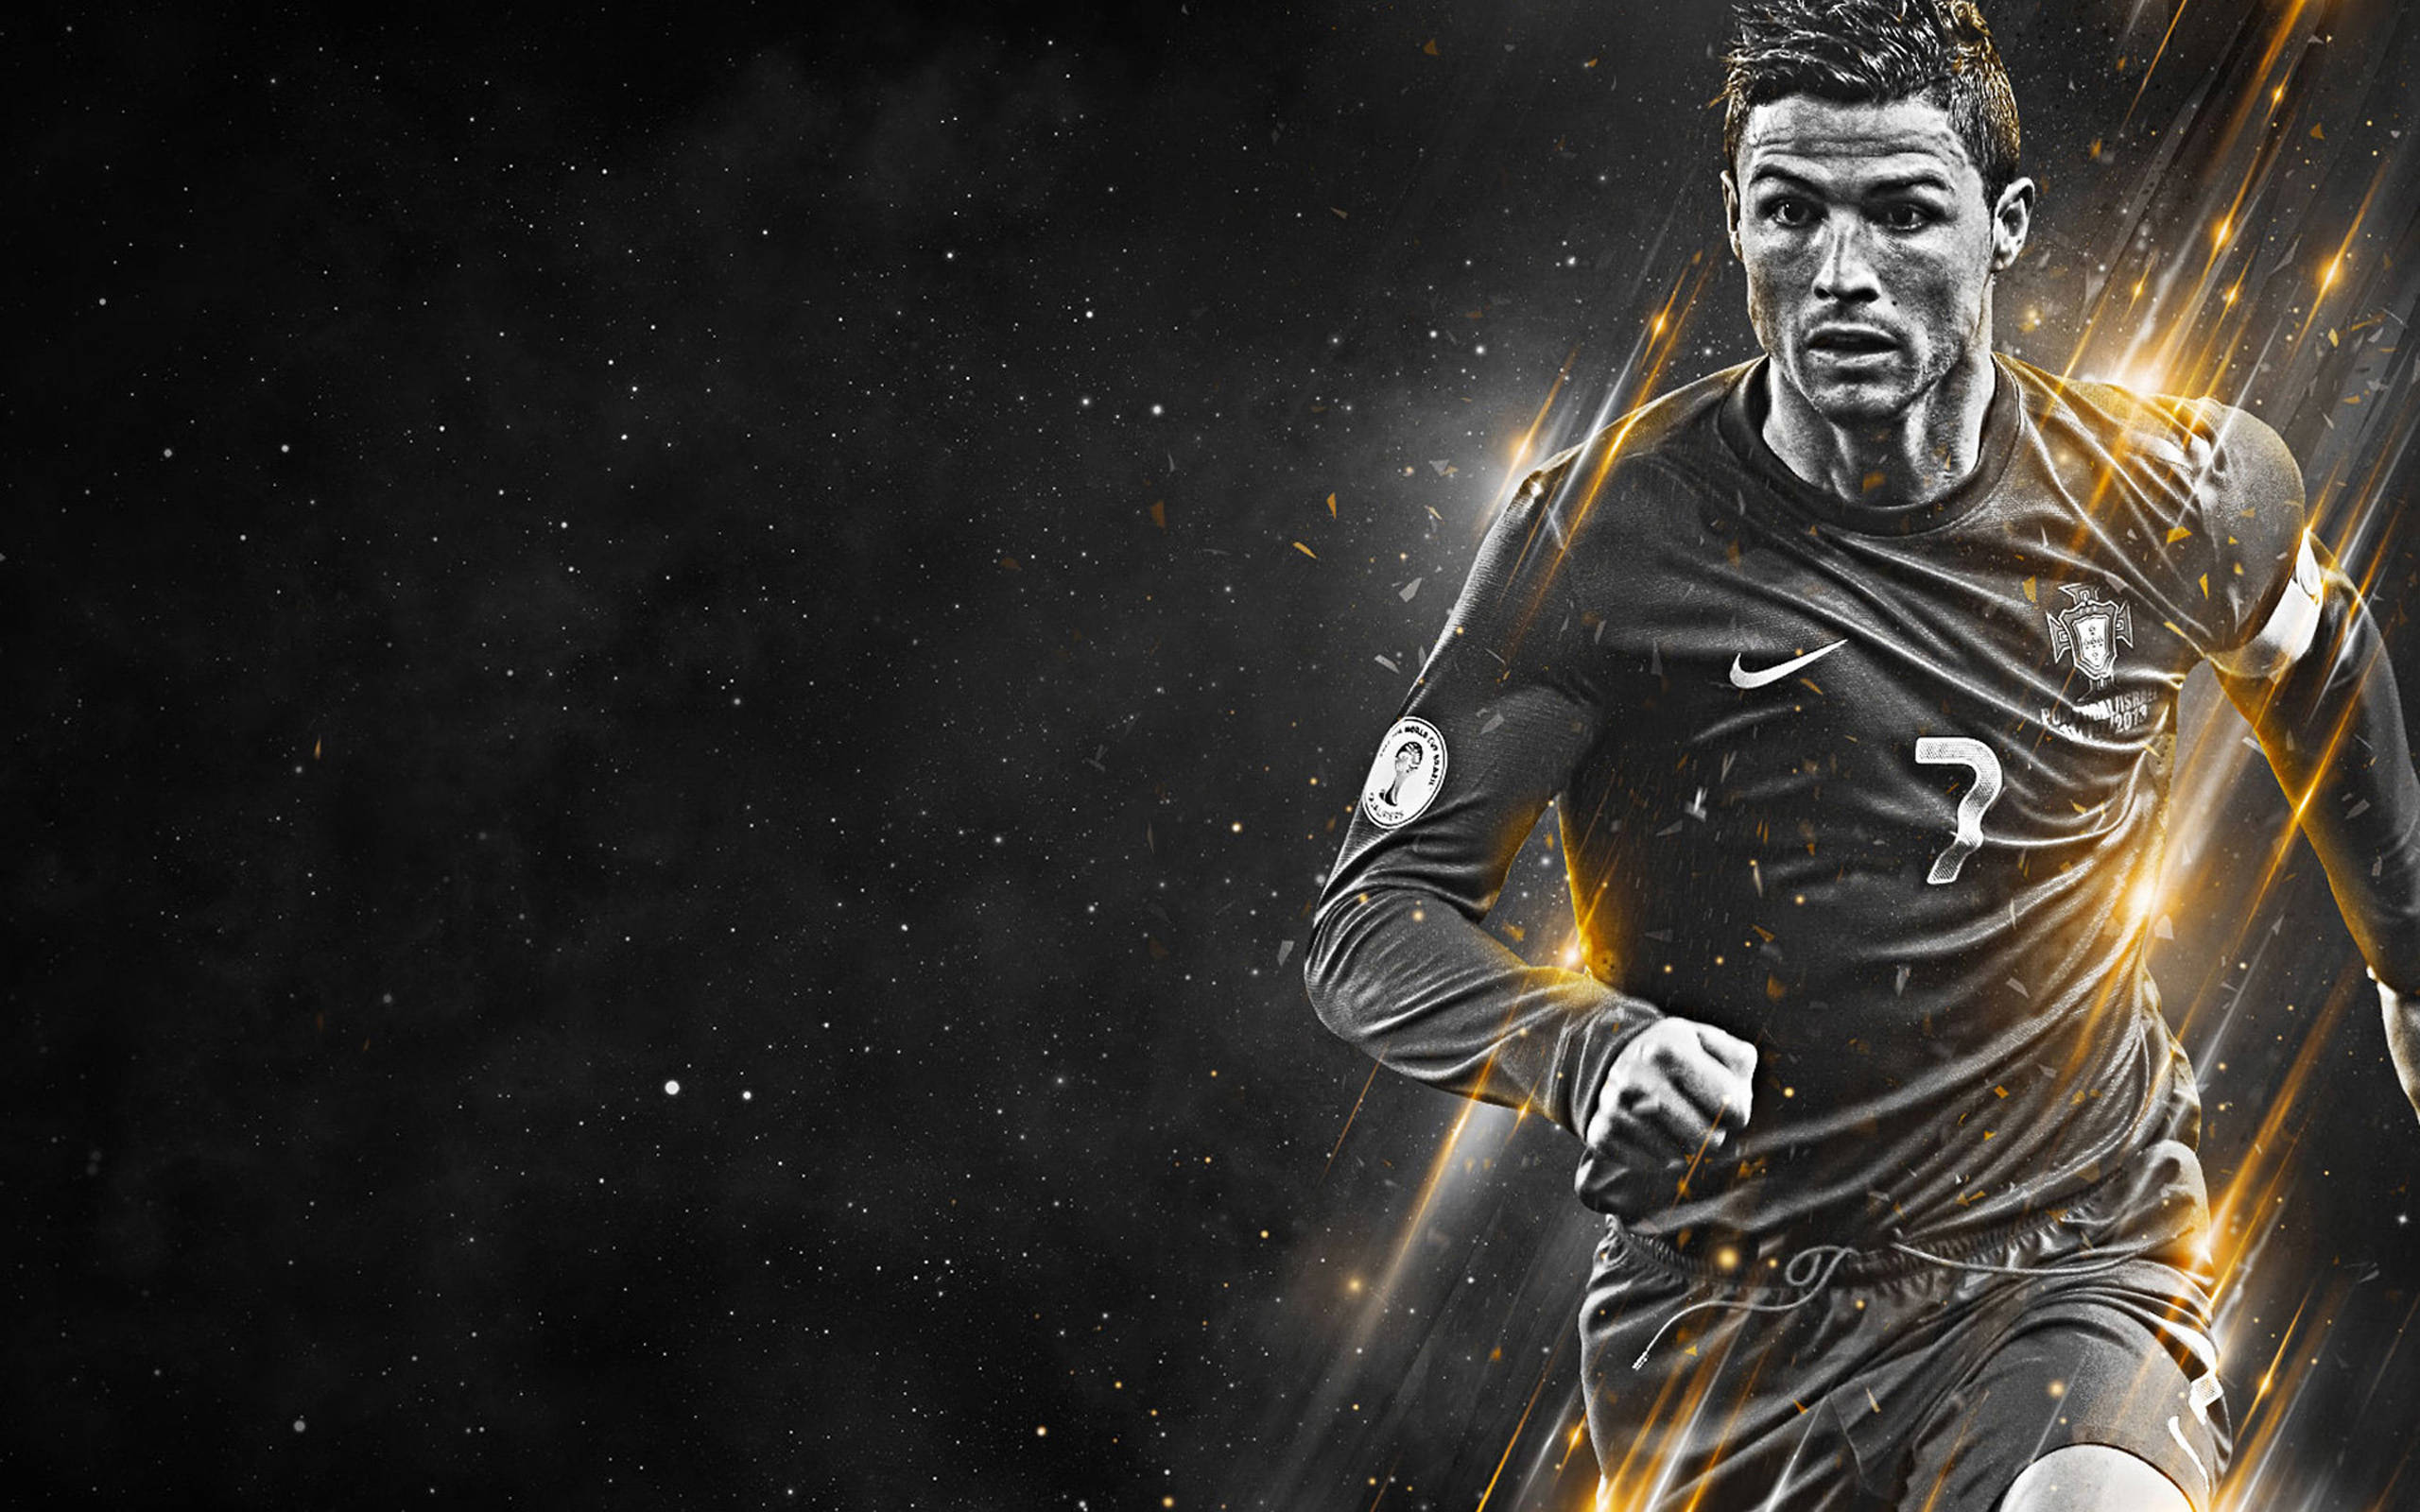 Monochrome Cristiano Ronaldo Cool Digital Artwork Wallpaper